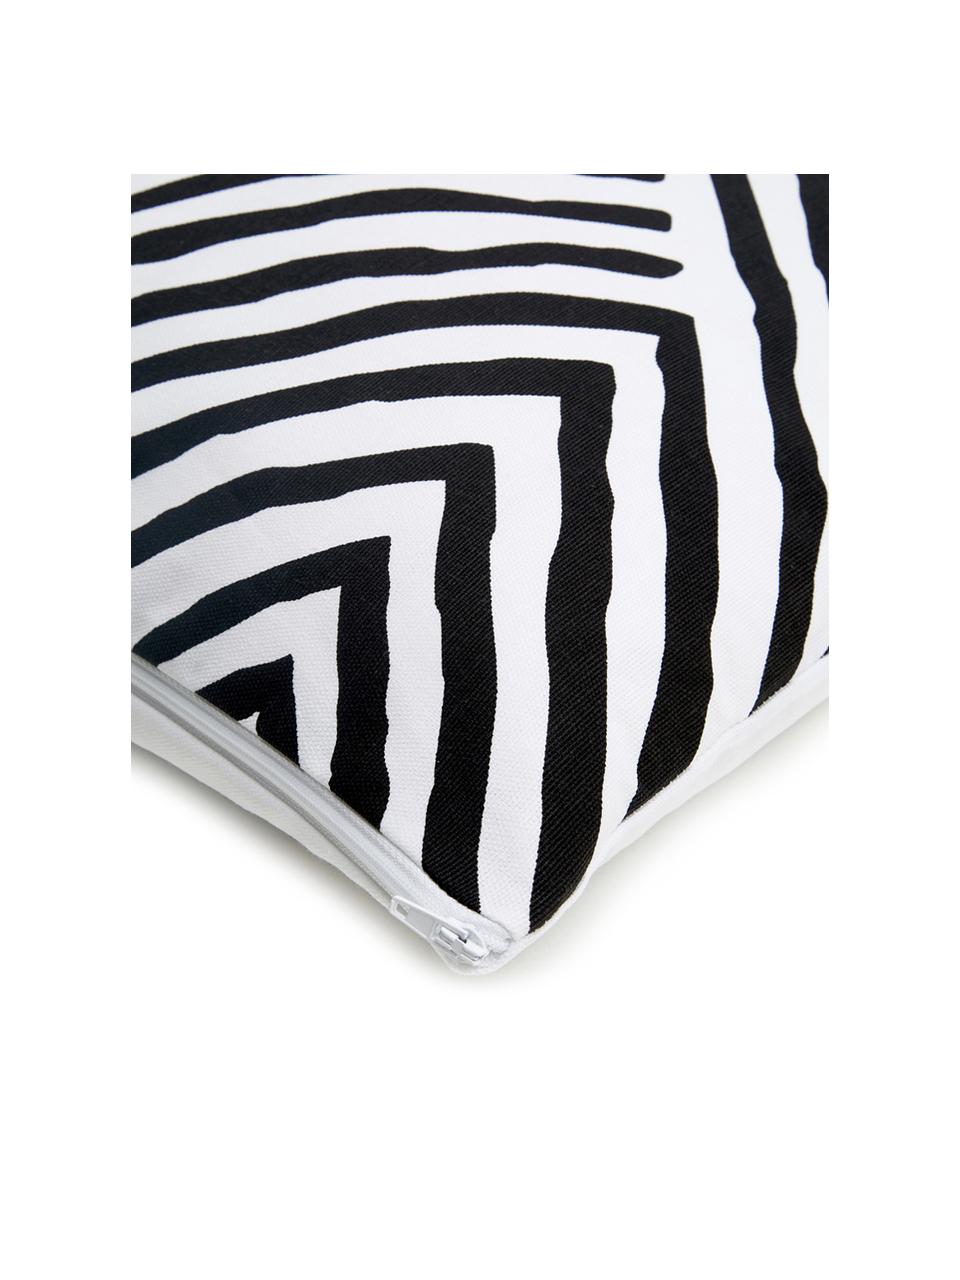 Poszewka na poduszkę Mia, 100% bawełna, Czarny, biały, S 40 x D 40 cm